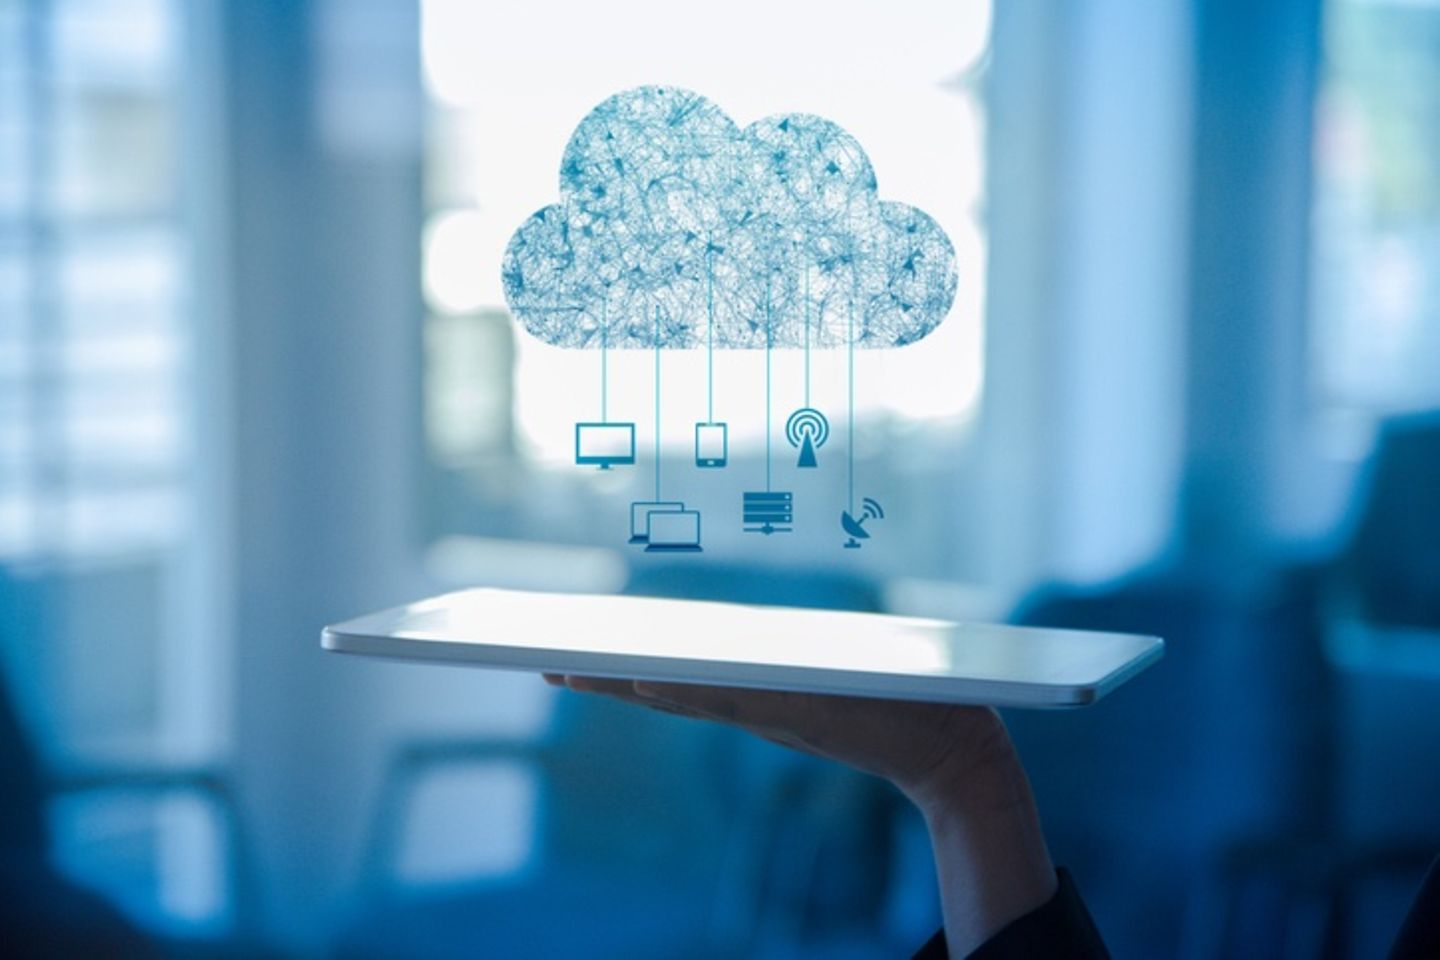 Tablet sobre una mano, sobre la cual aparecen el dibujo de una nube e iconos